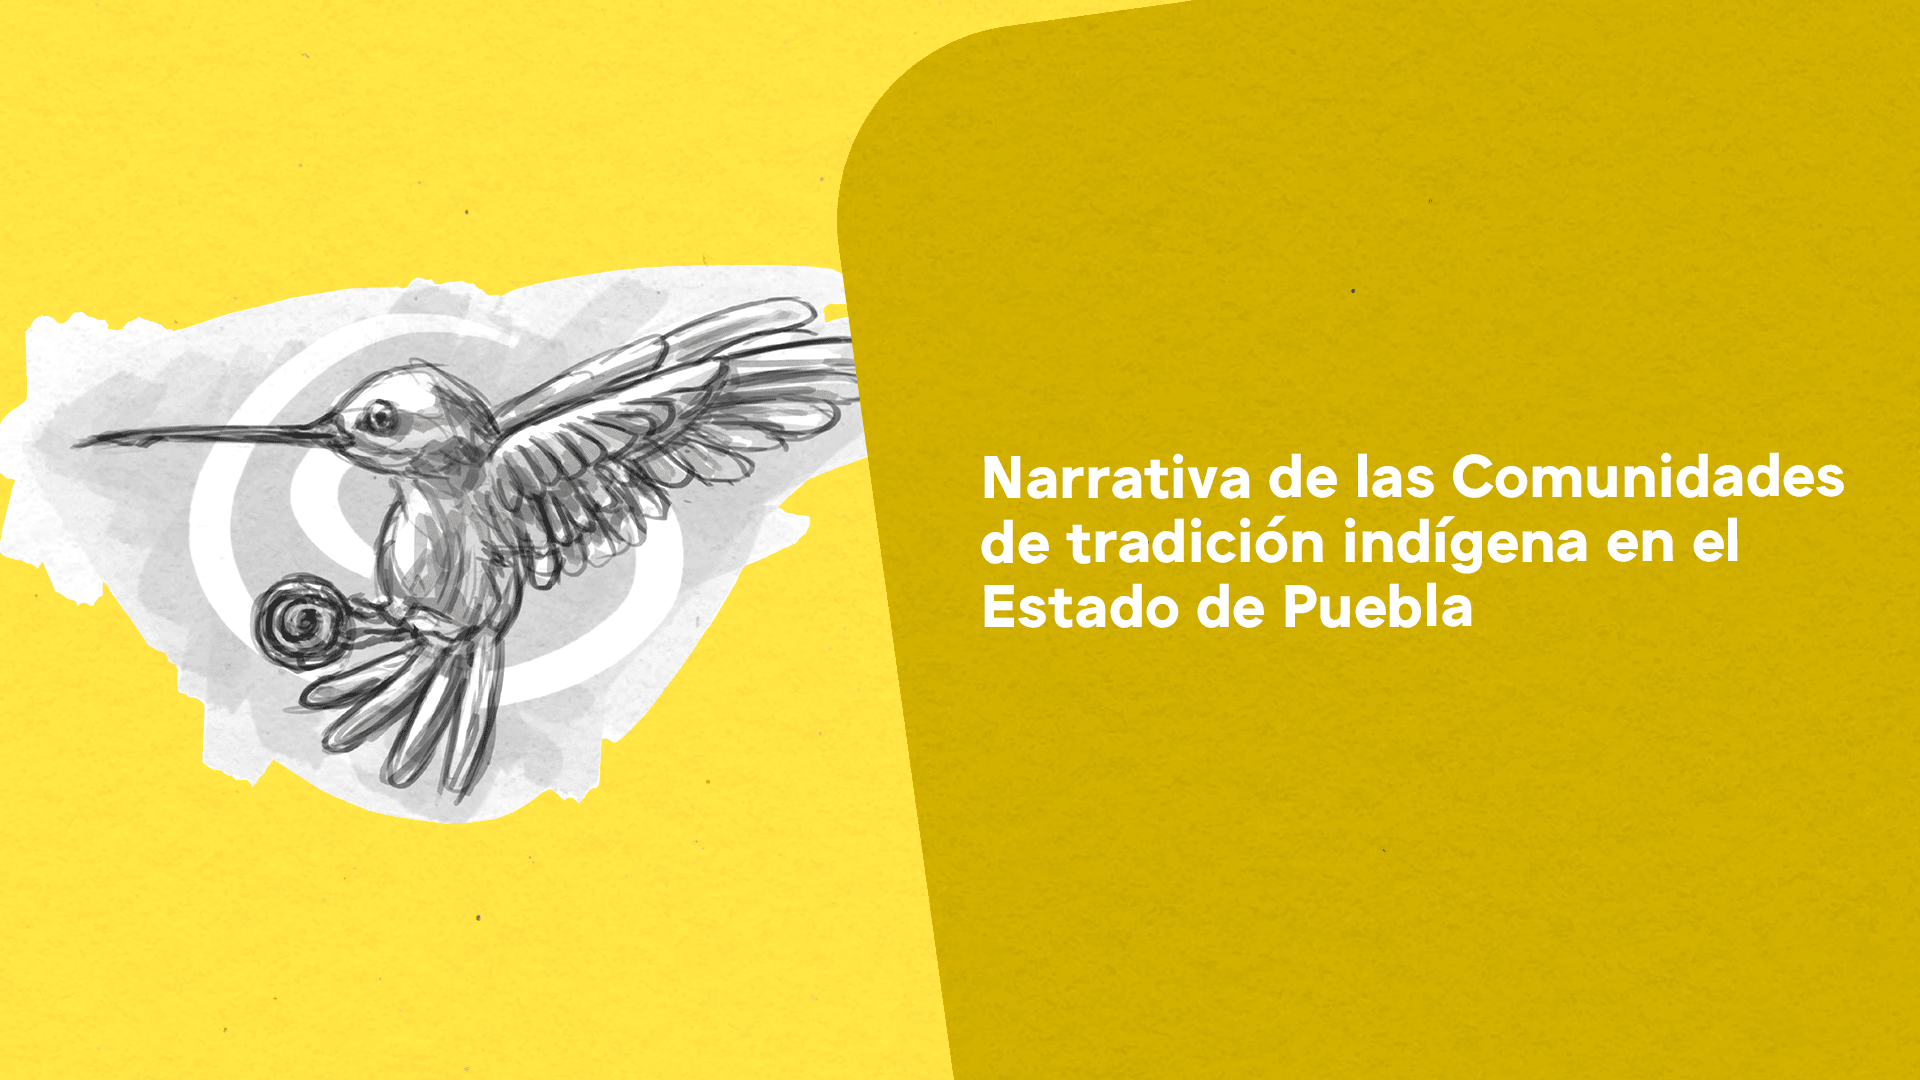 Narrativa de las Comunidades de tradición indígena en el Estado de Puebla